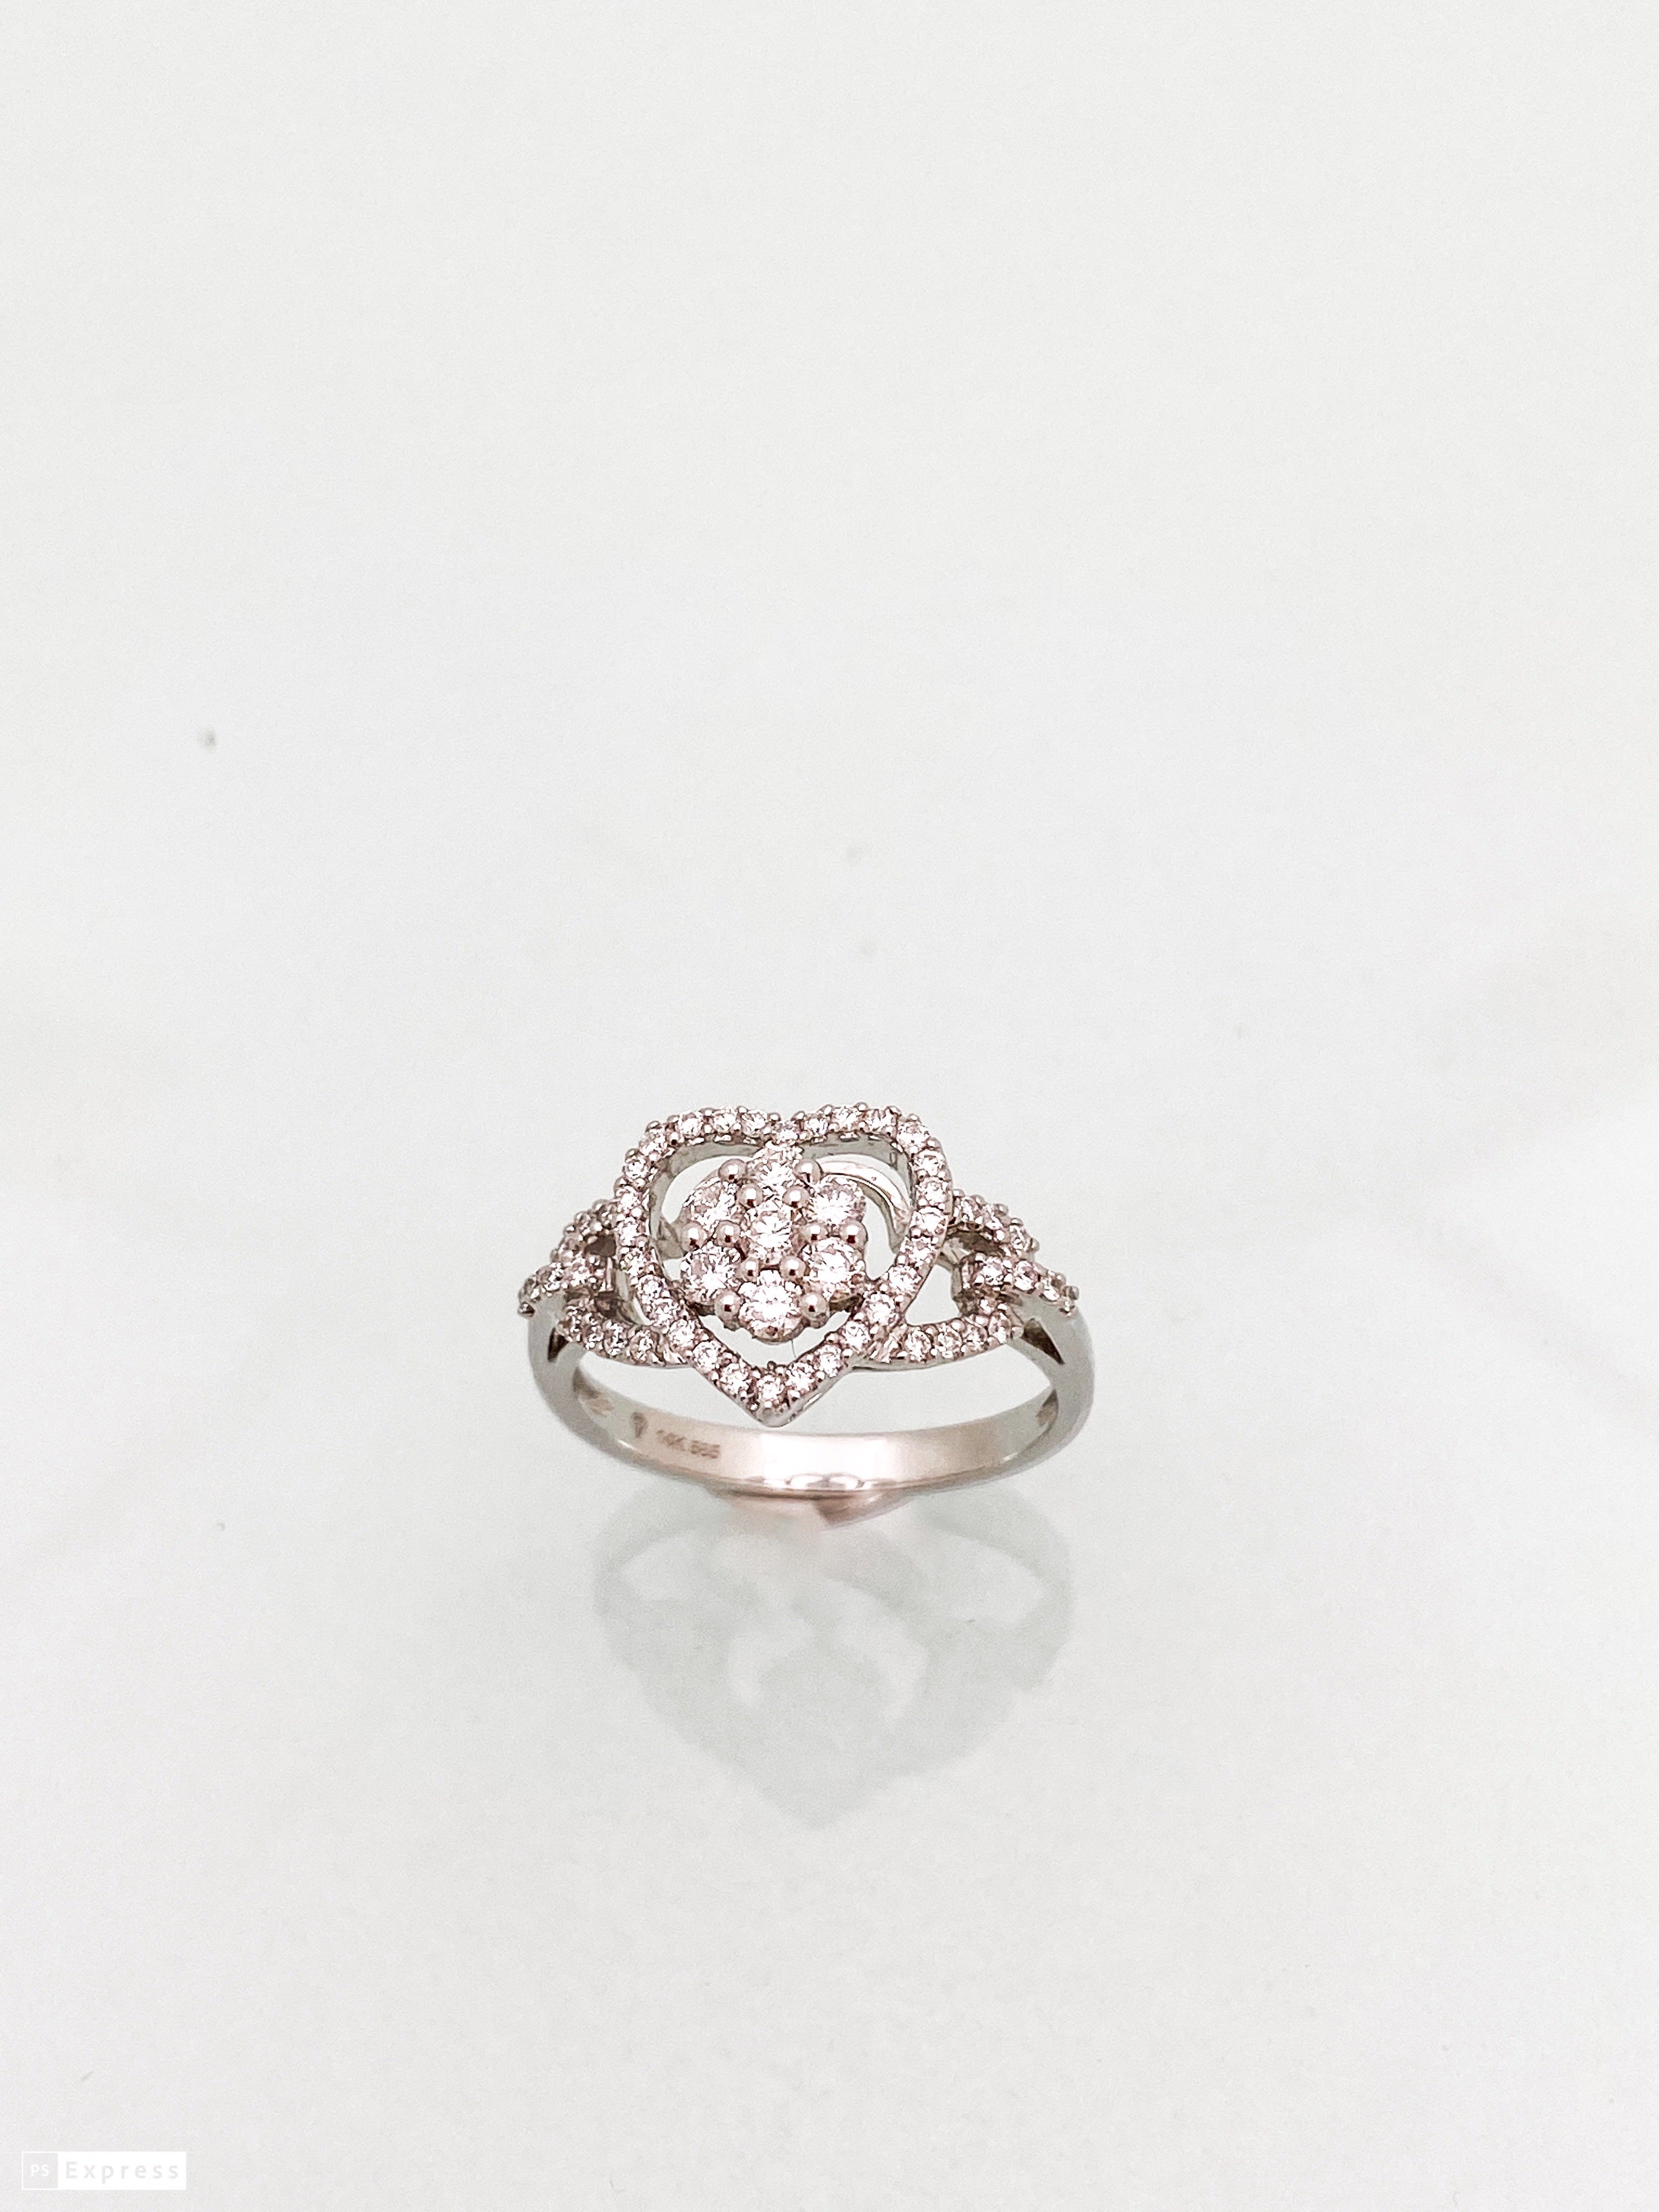 טבעת זהב לבן 14 קארט בצורת לב עם פרח בפנים